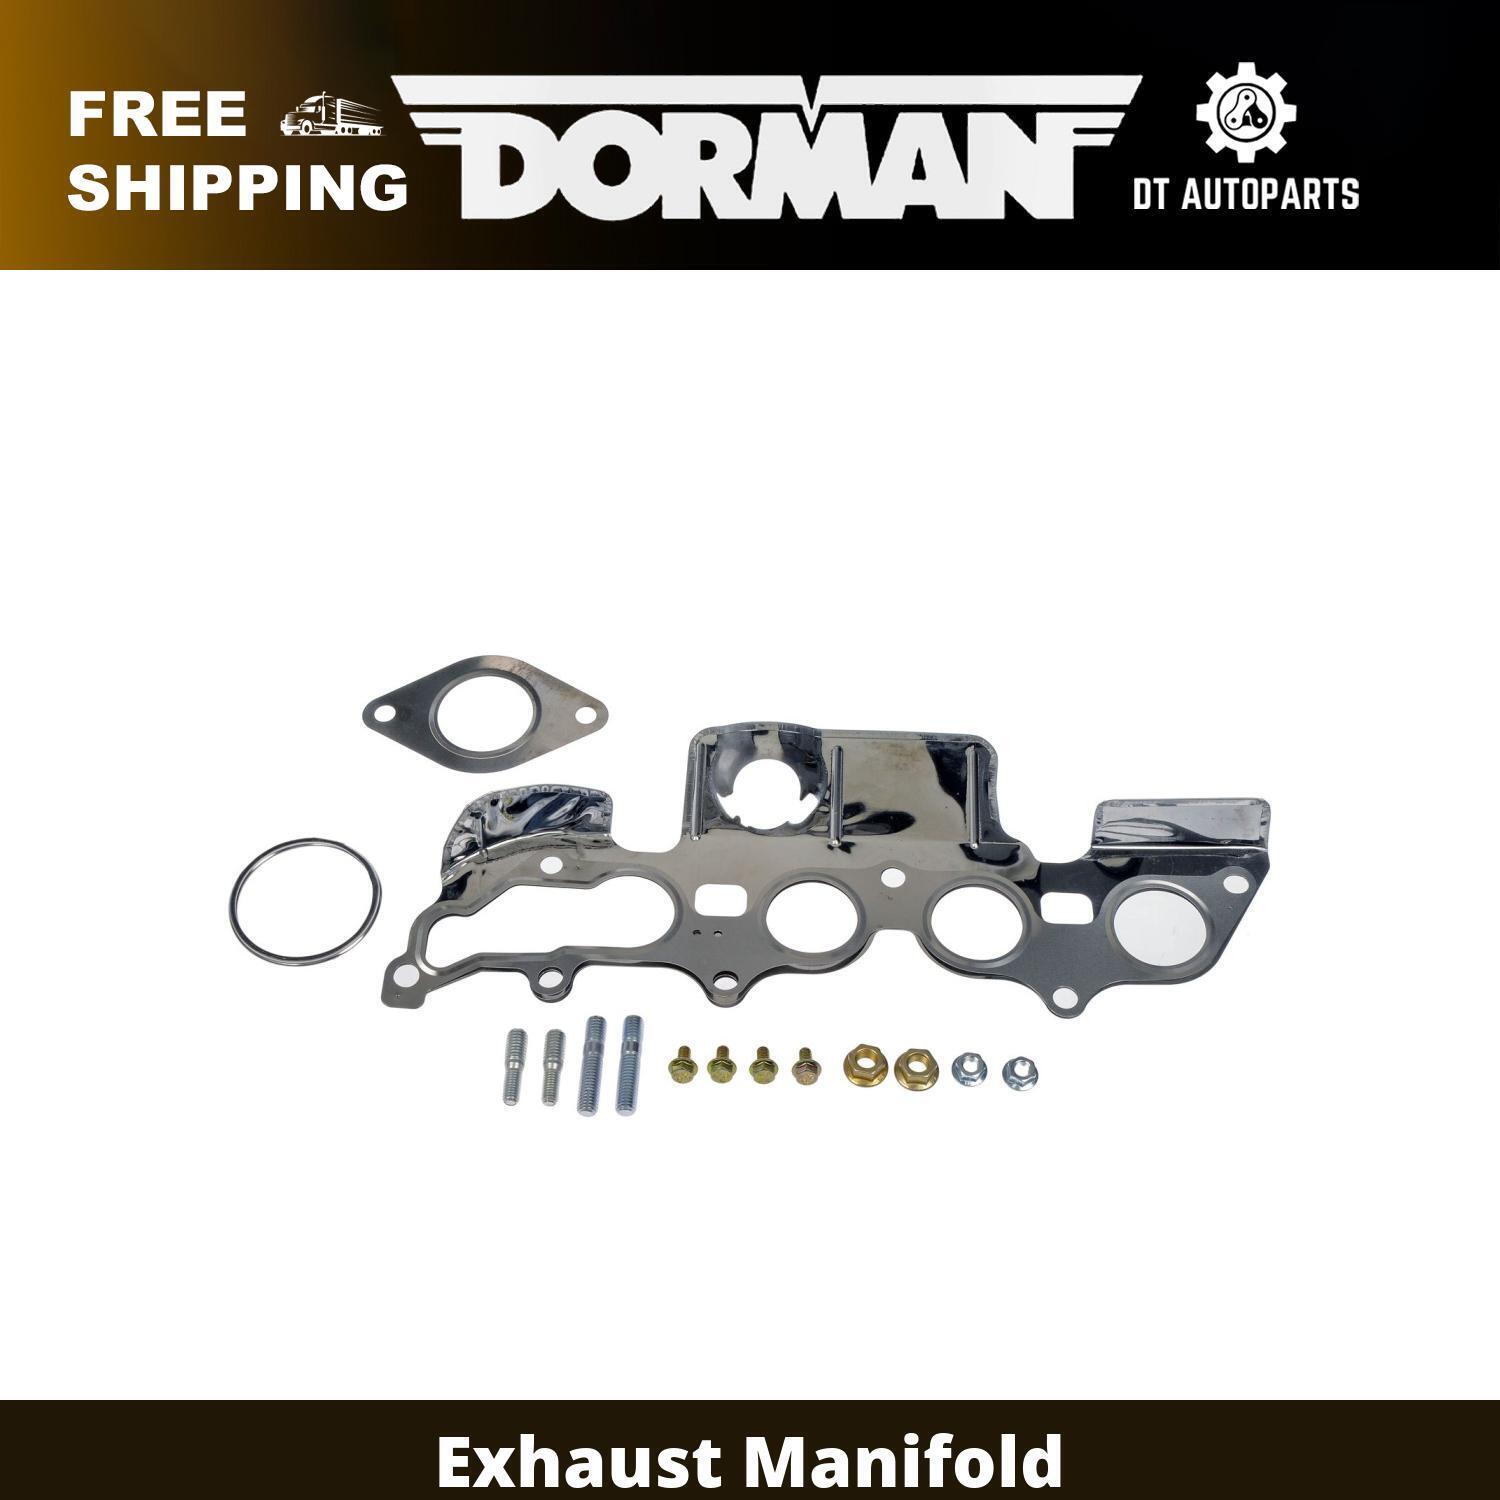 For 2009-2012 Ford Escape 2.5L L4 Dorman Exhaust Manifold 2010 2011